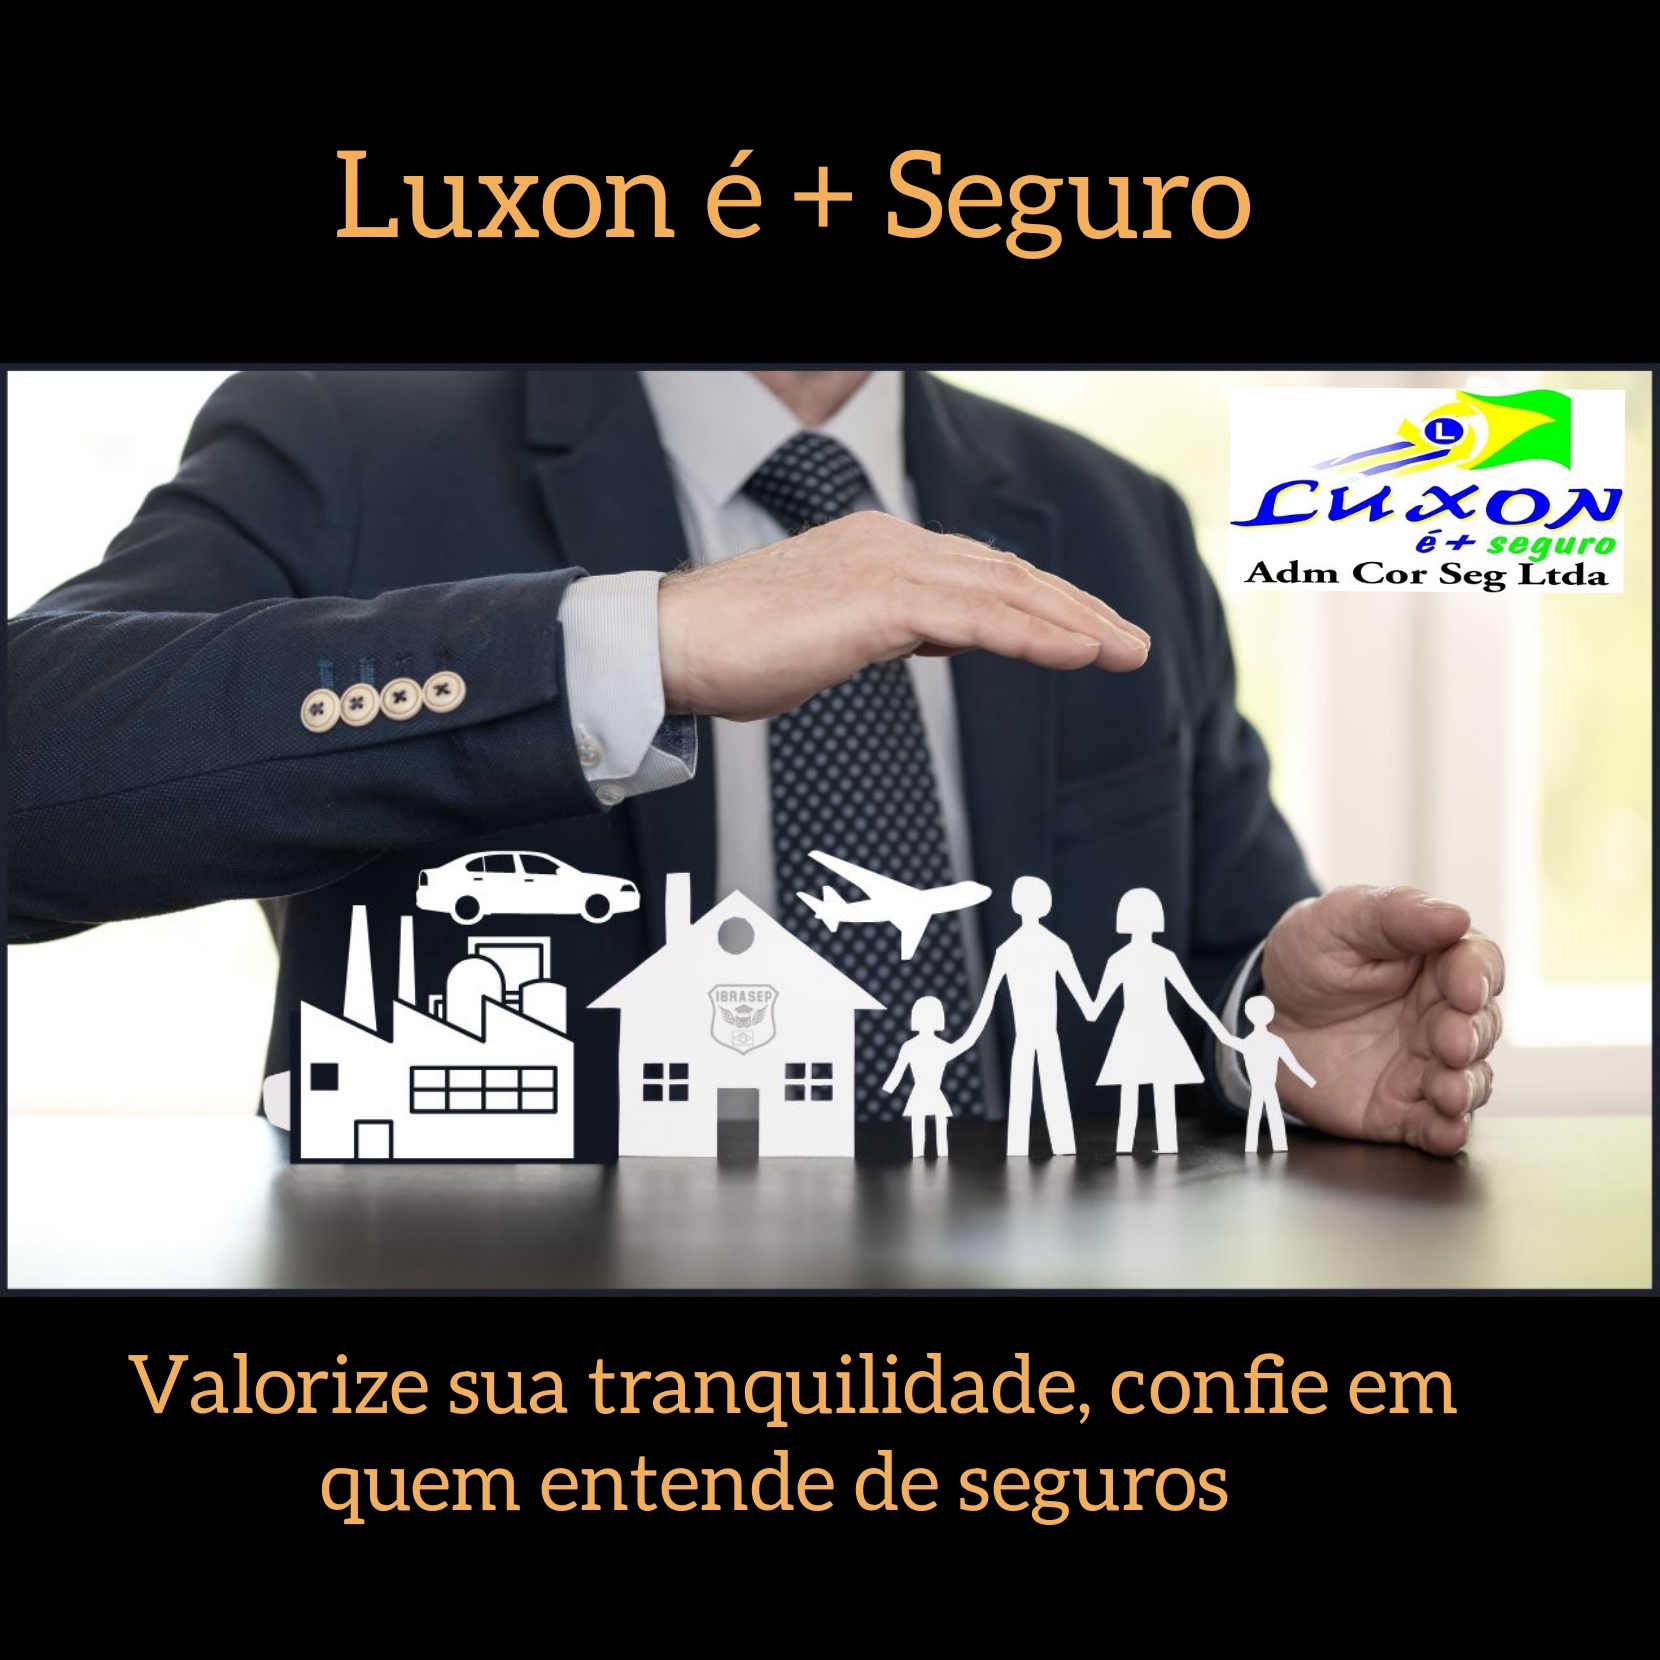 Luxon é + Seguros: Valorize sua tranquilidade, confie em quem entende de seguros